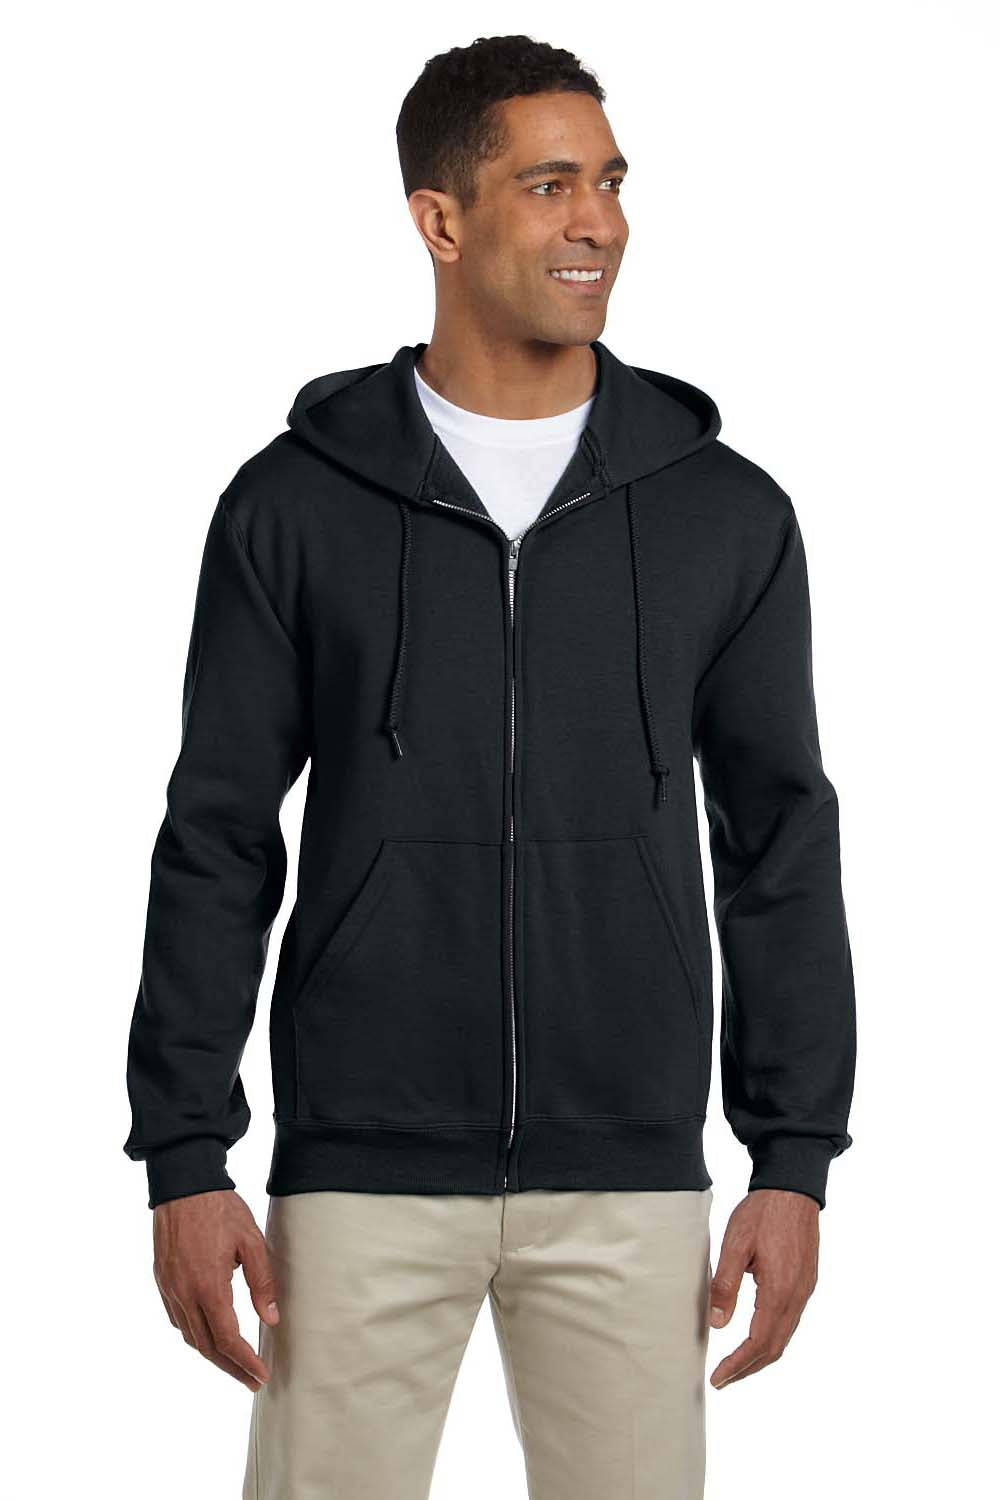 Jerzees 4999 Mens Super Sweats NuBlend Fleece Full Zip Hooded Sweatshirt Hoodie Black Front